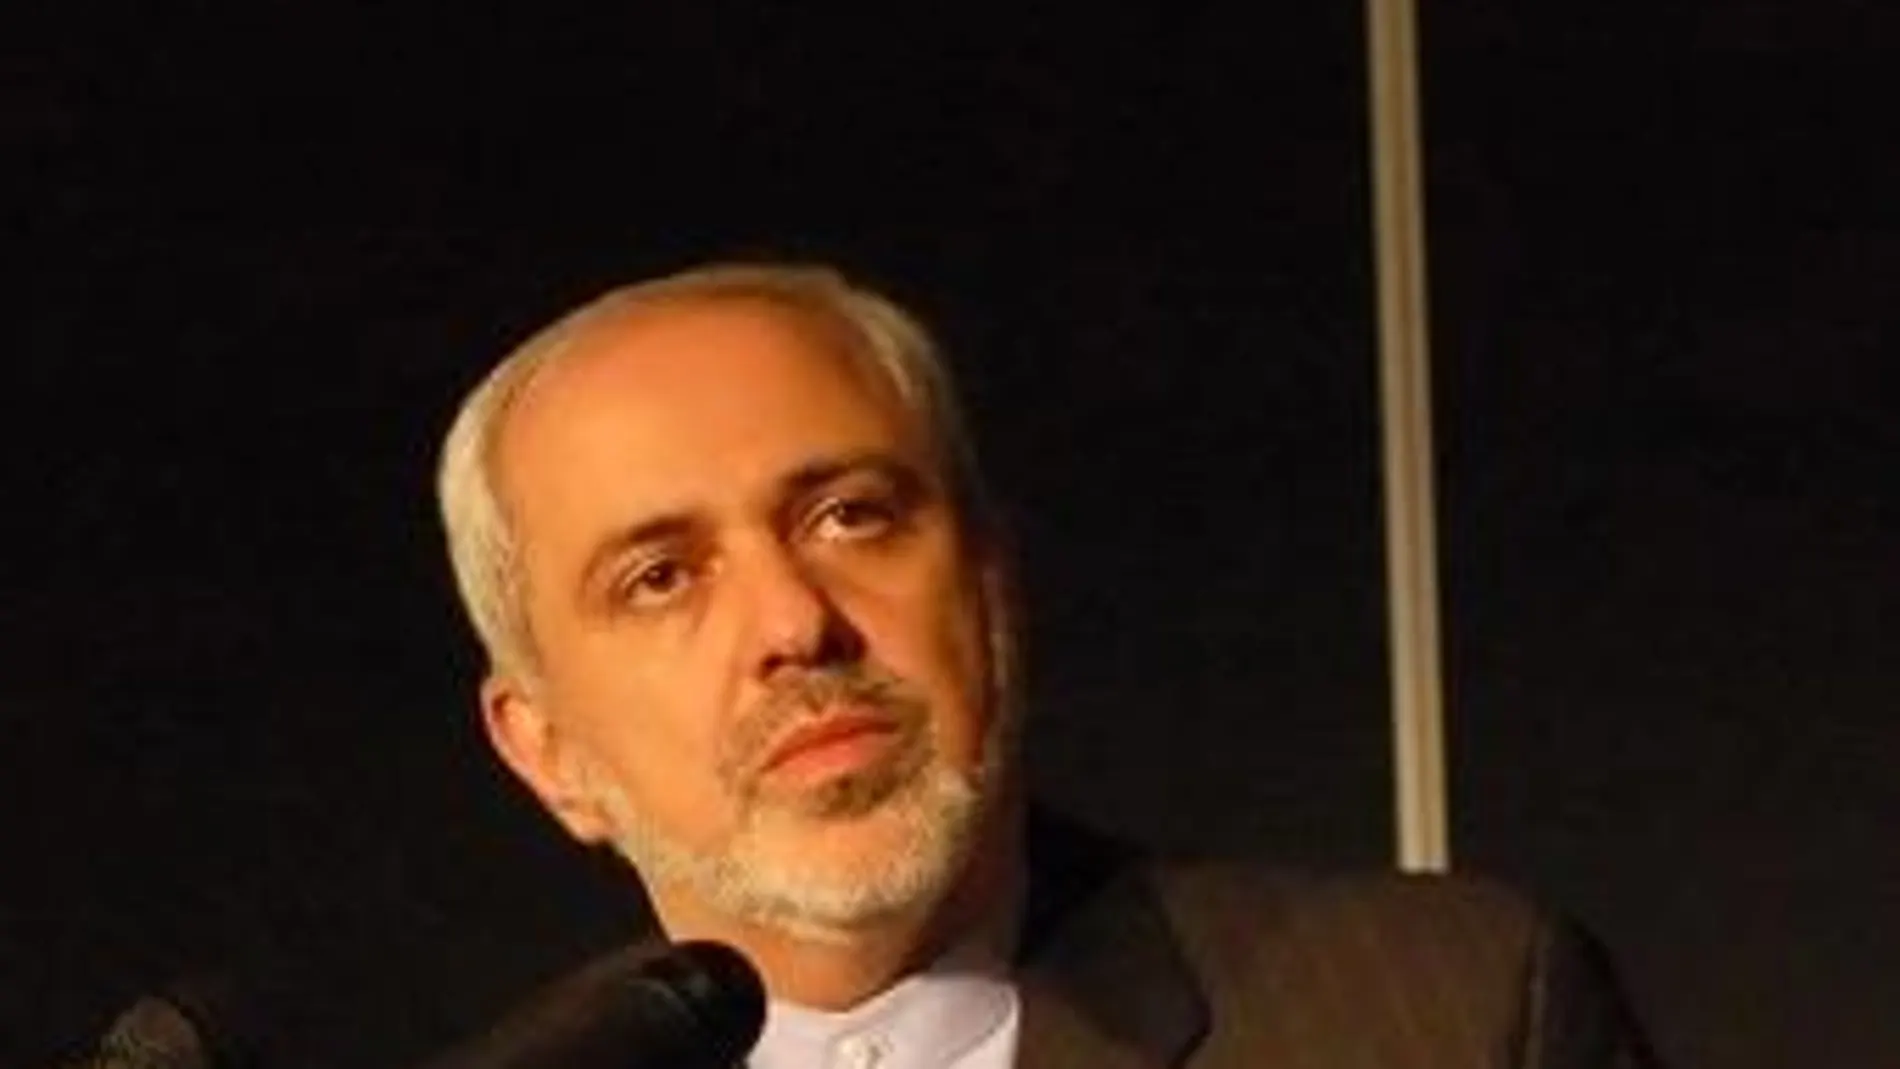 El ministro de Exteriores iraní acude a un hospital «por dolores causados por una noticia falsa»